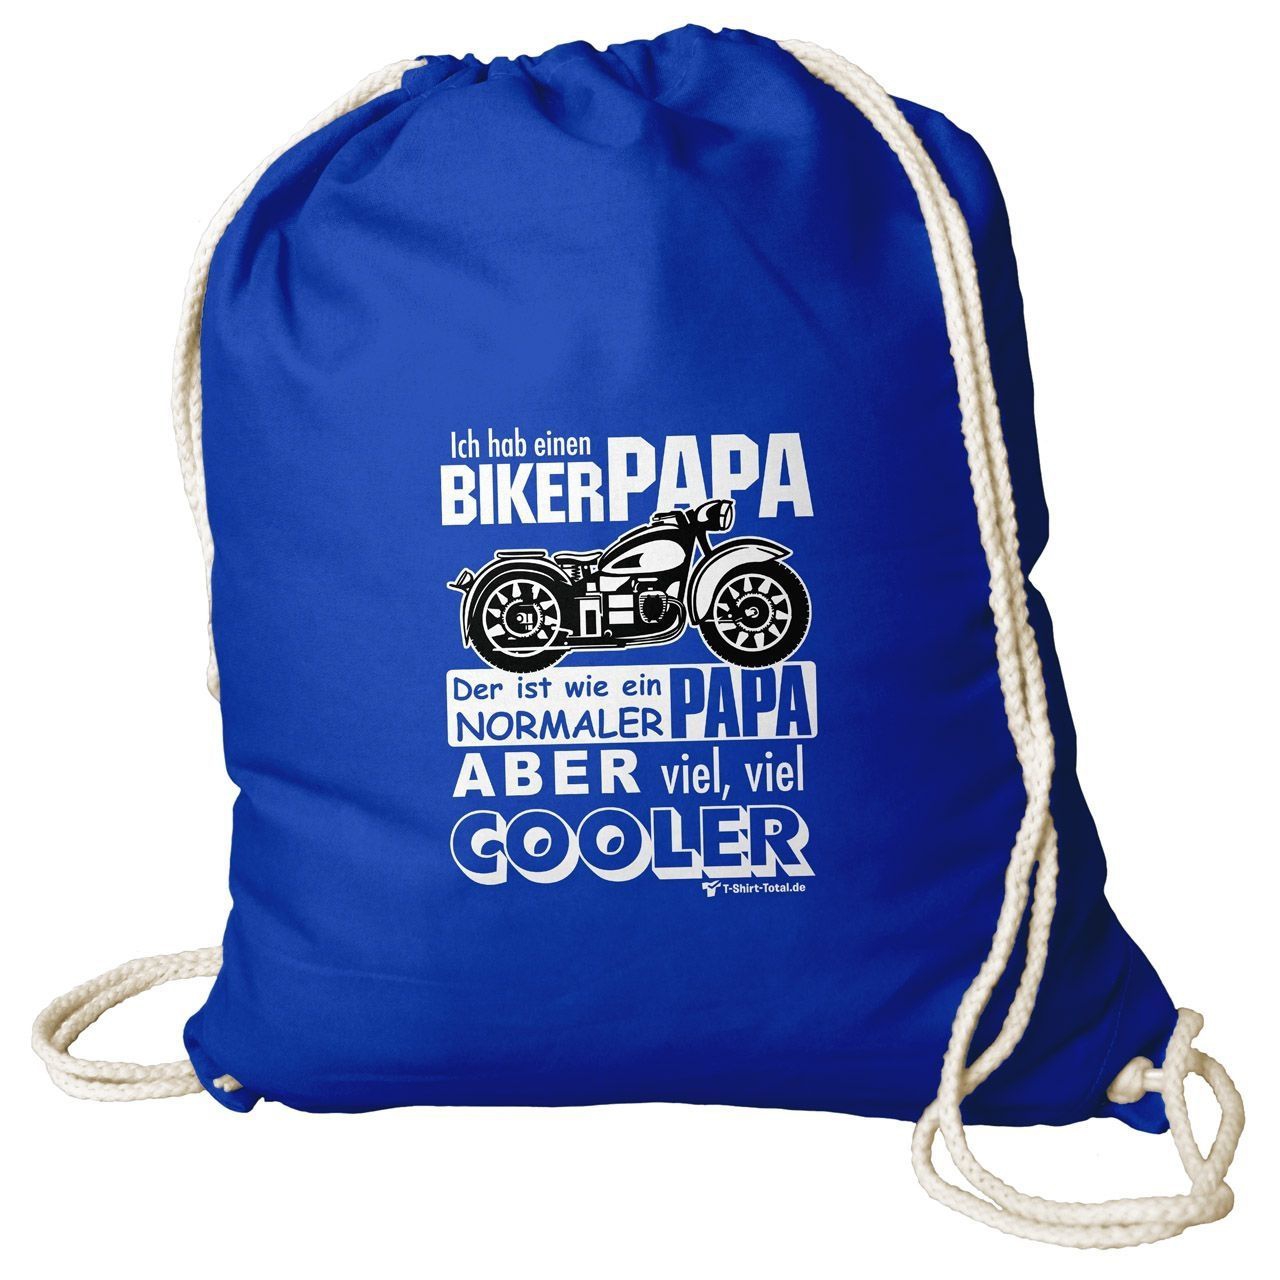 Biker Papa Rucksack Beutel royal